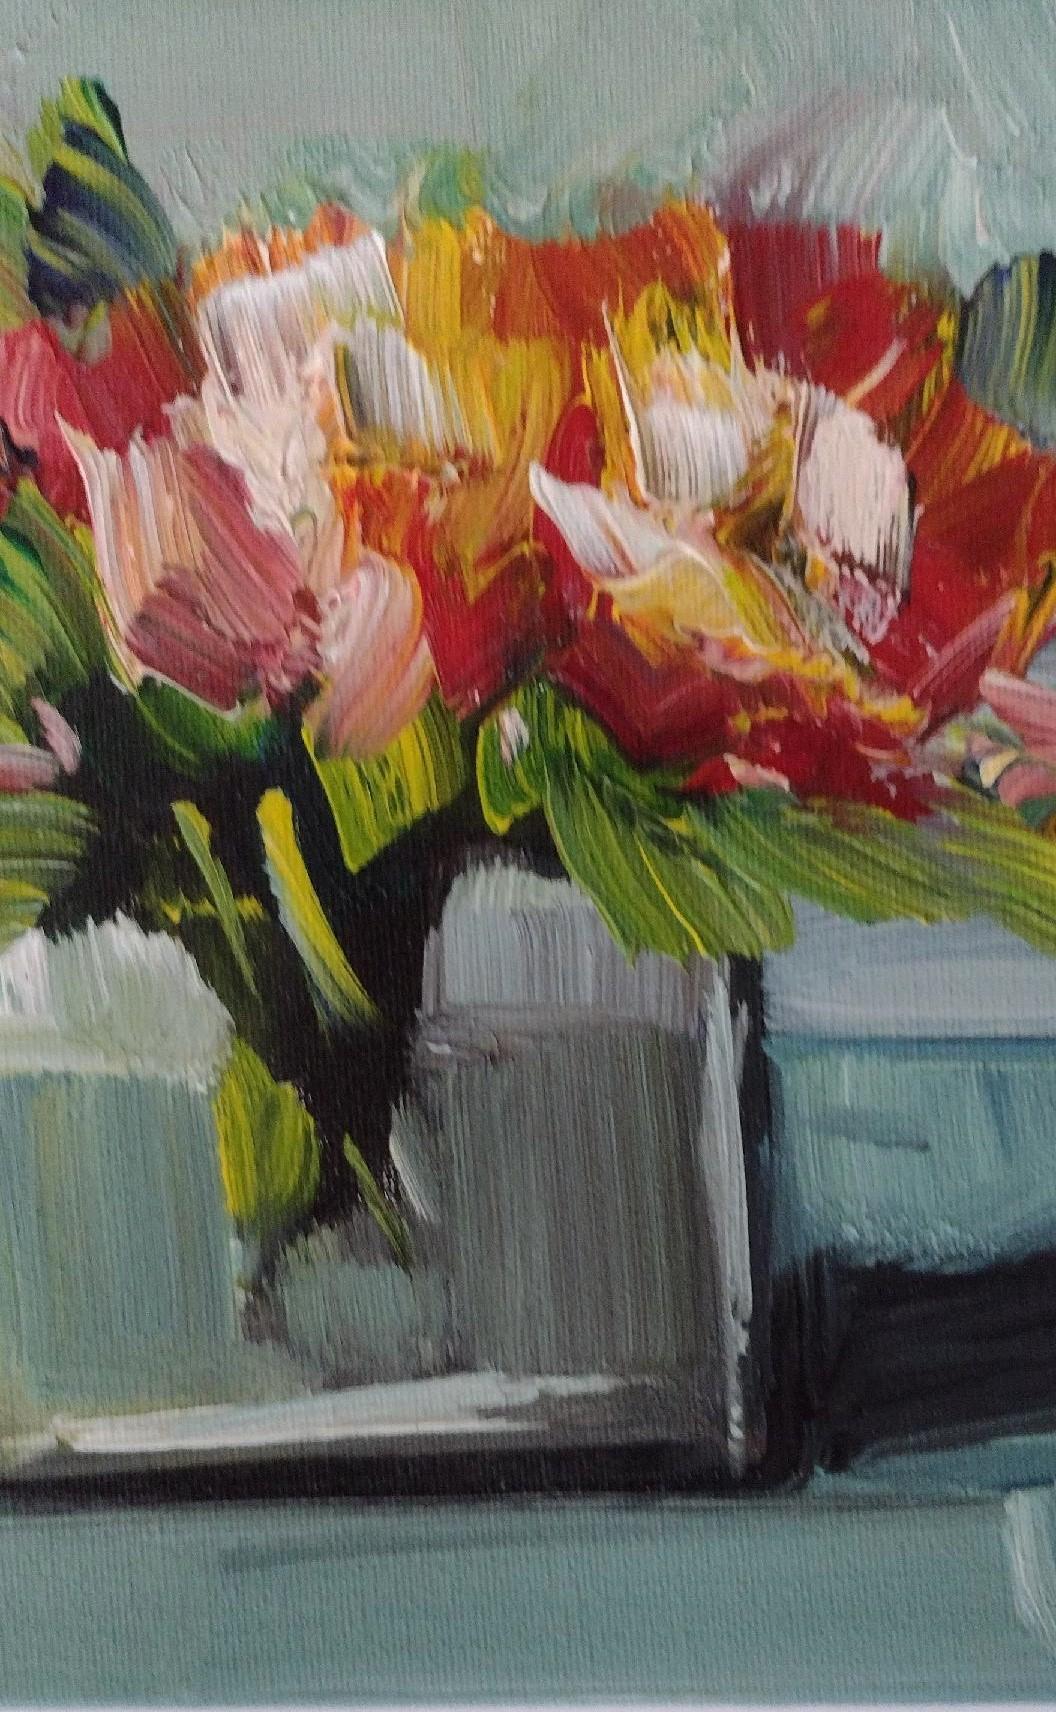 Vase mit Blumen III – Original impressionistisches Ölgemälde auf Leinwand 2022 (Amerikanischer Impressionismus), Painting, von Jose Lima